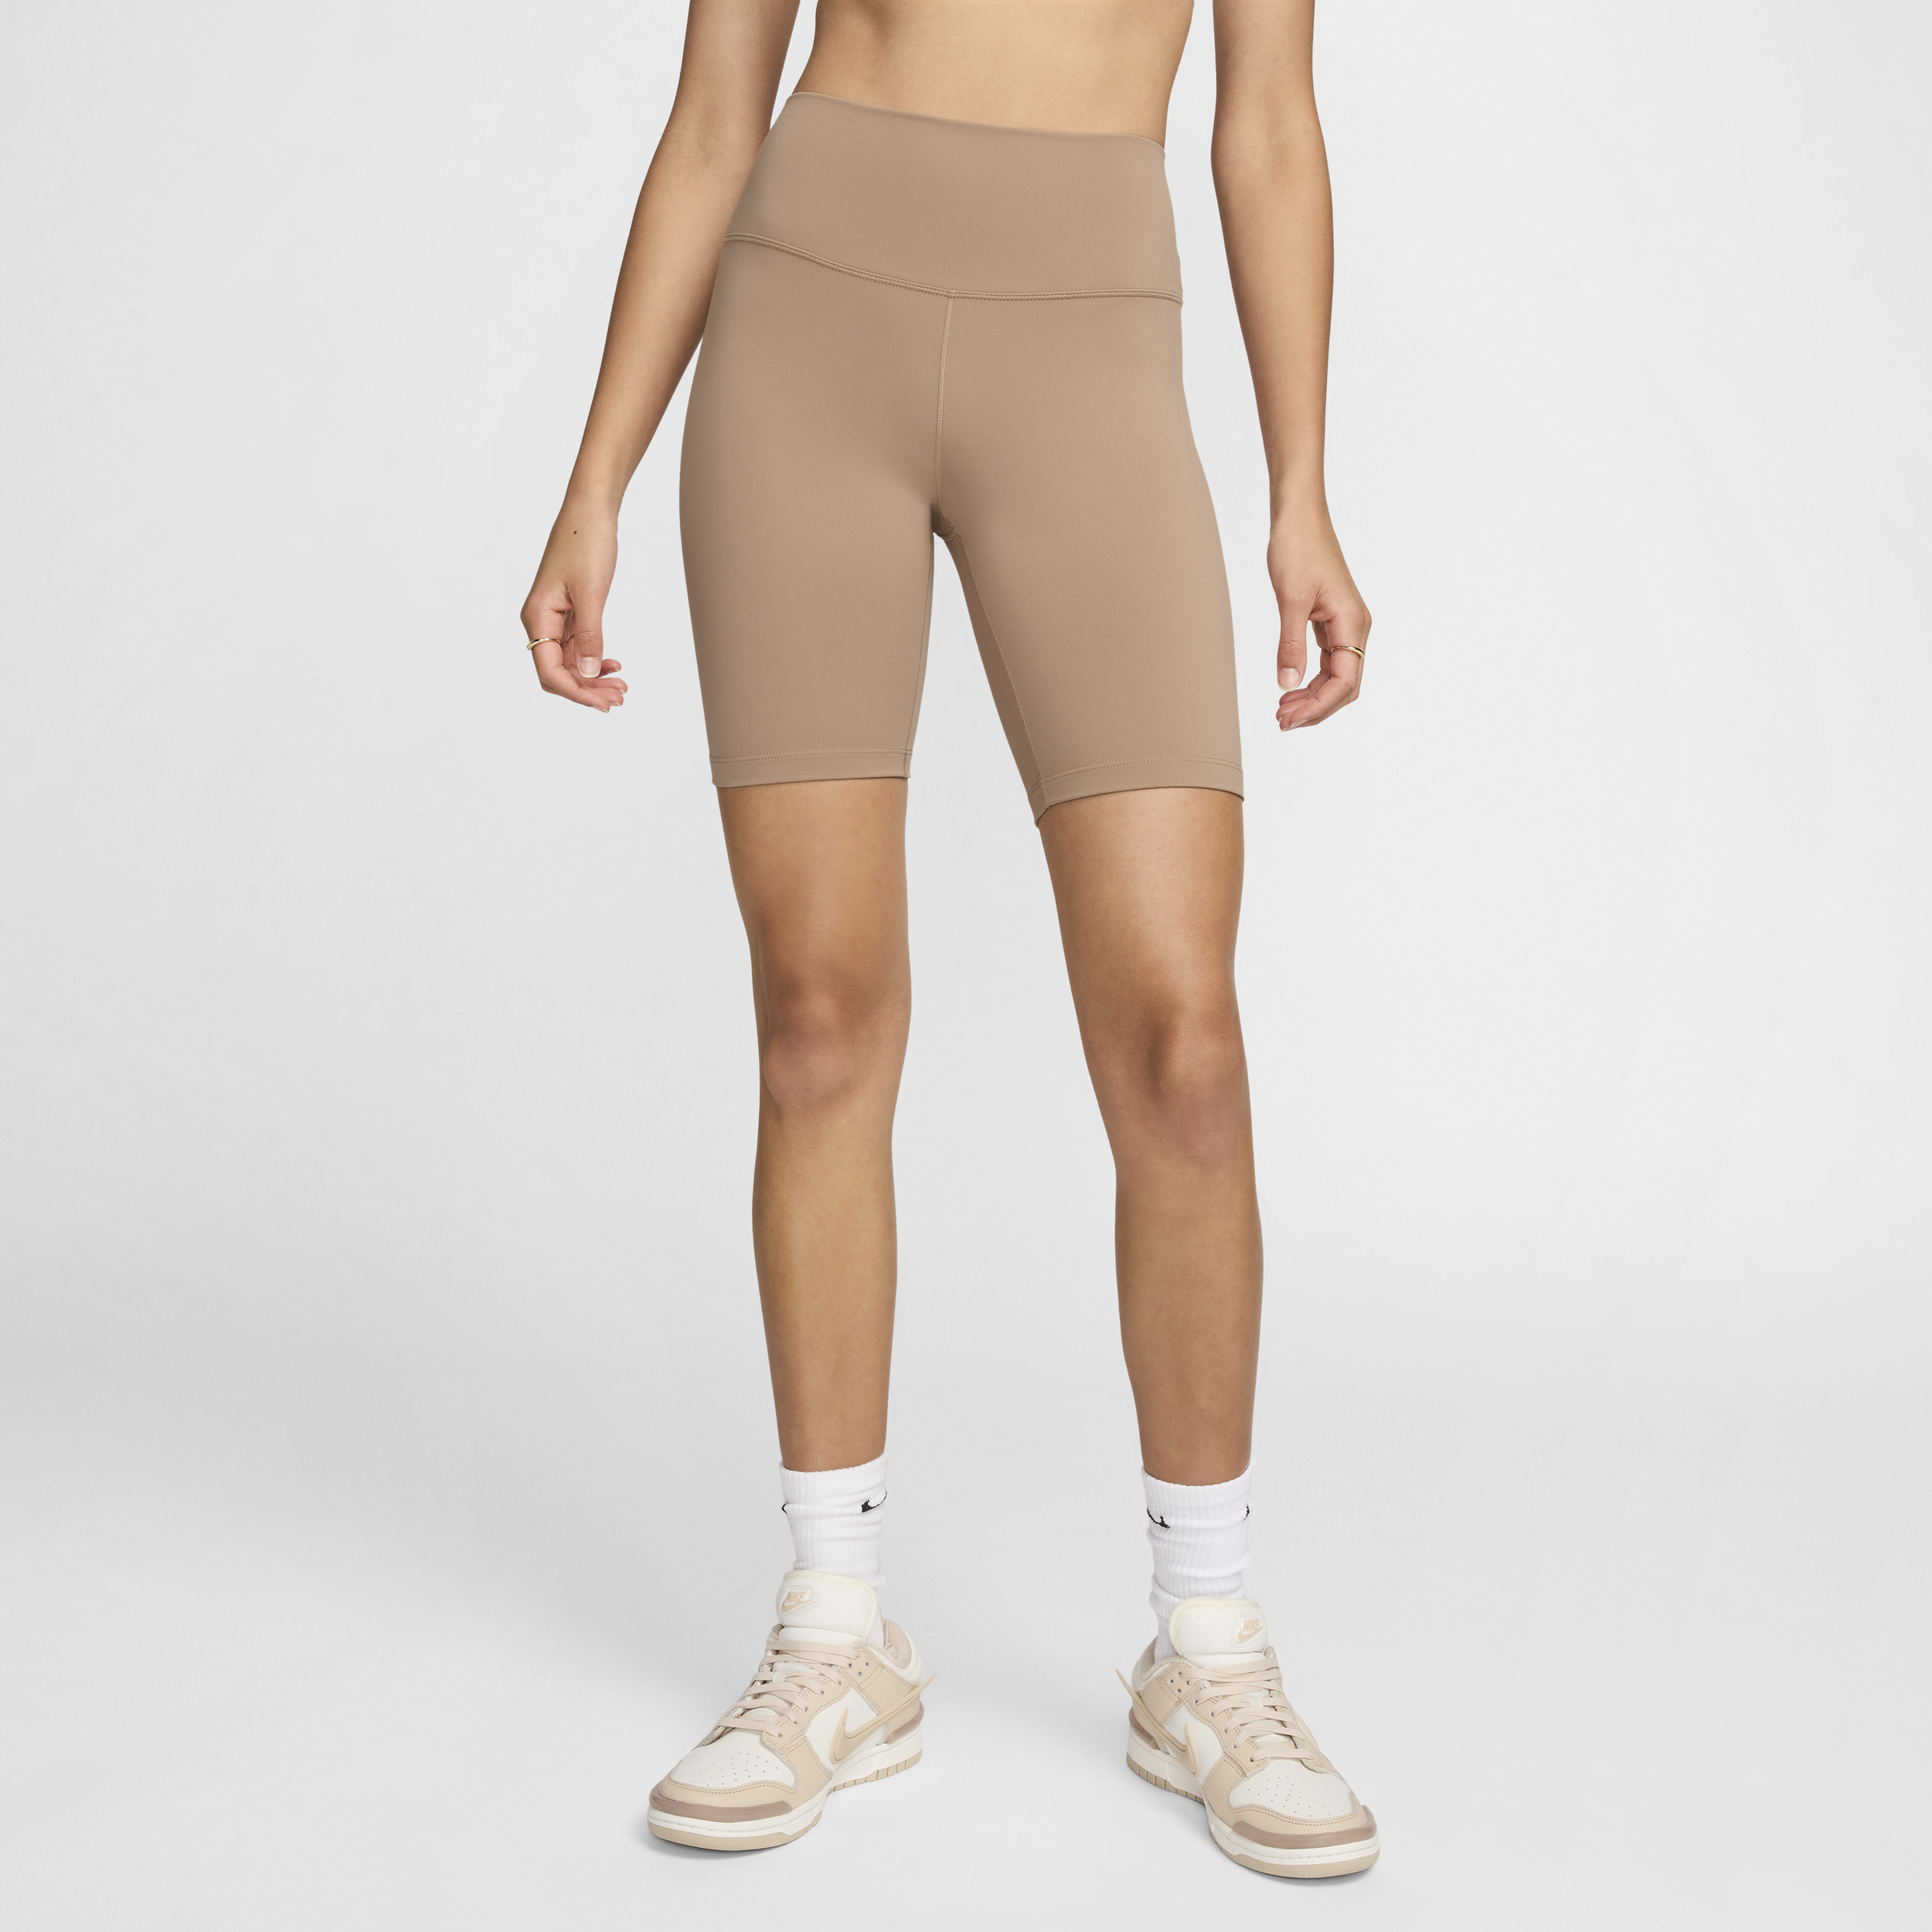 Nike One-cykelshorts med høj talje (20 cm) til kvinder - brun